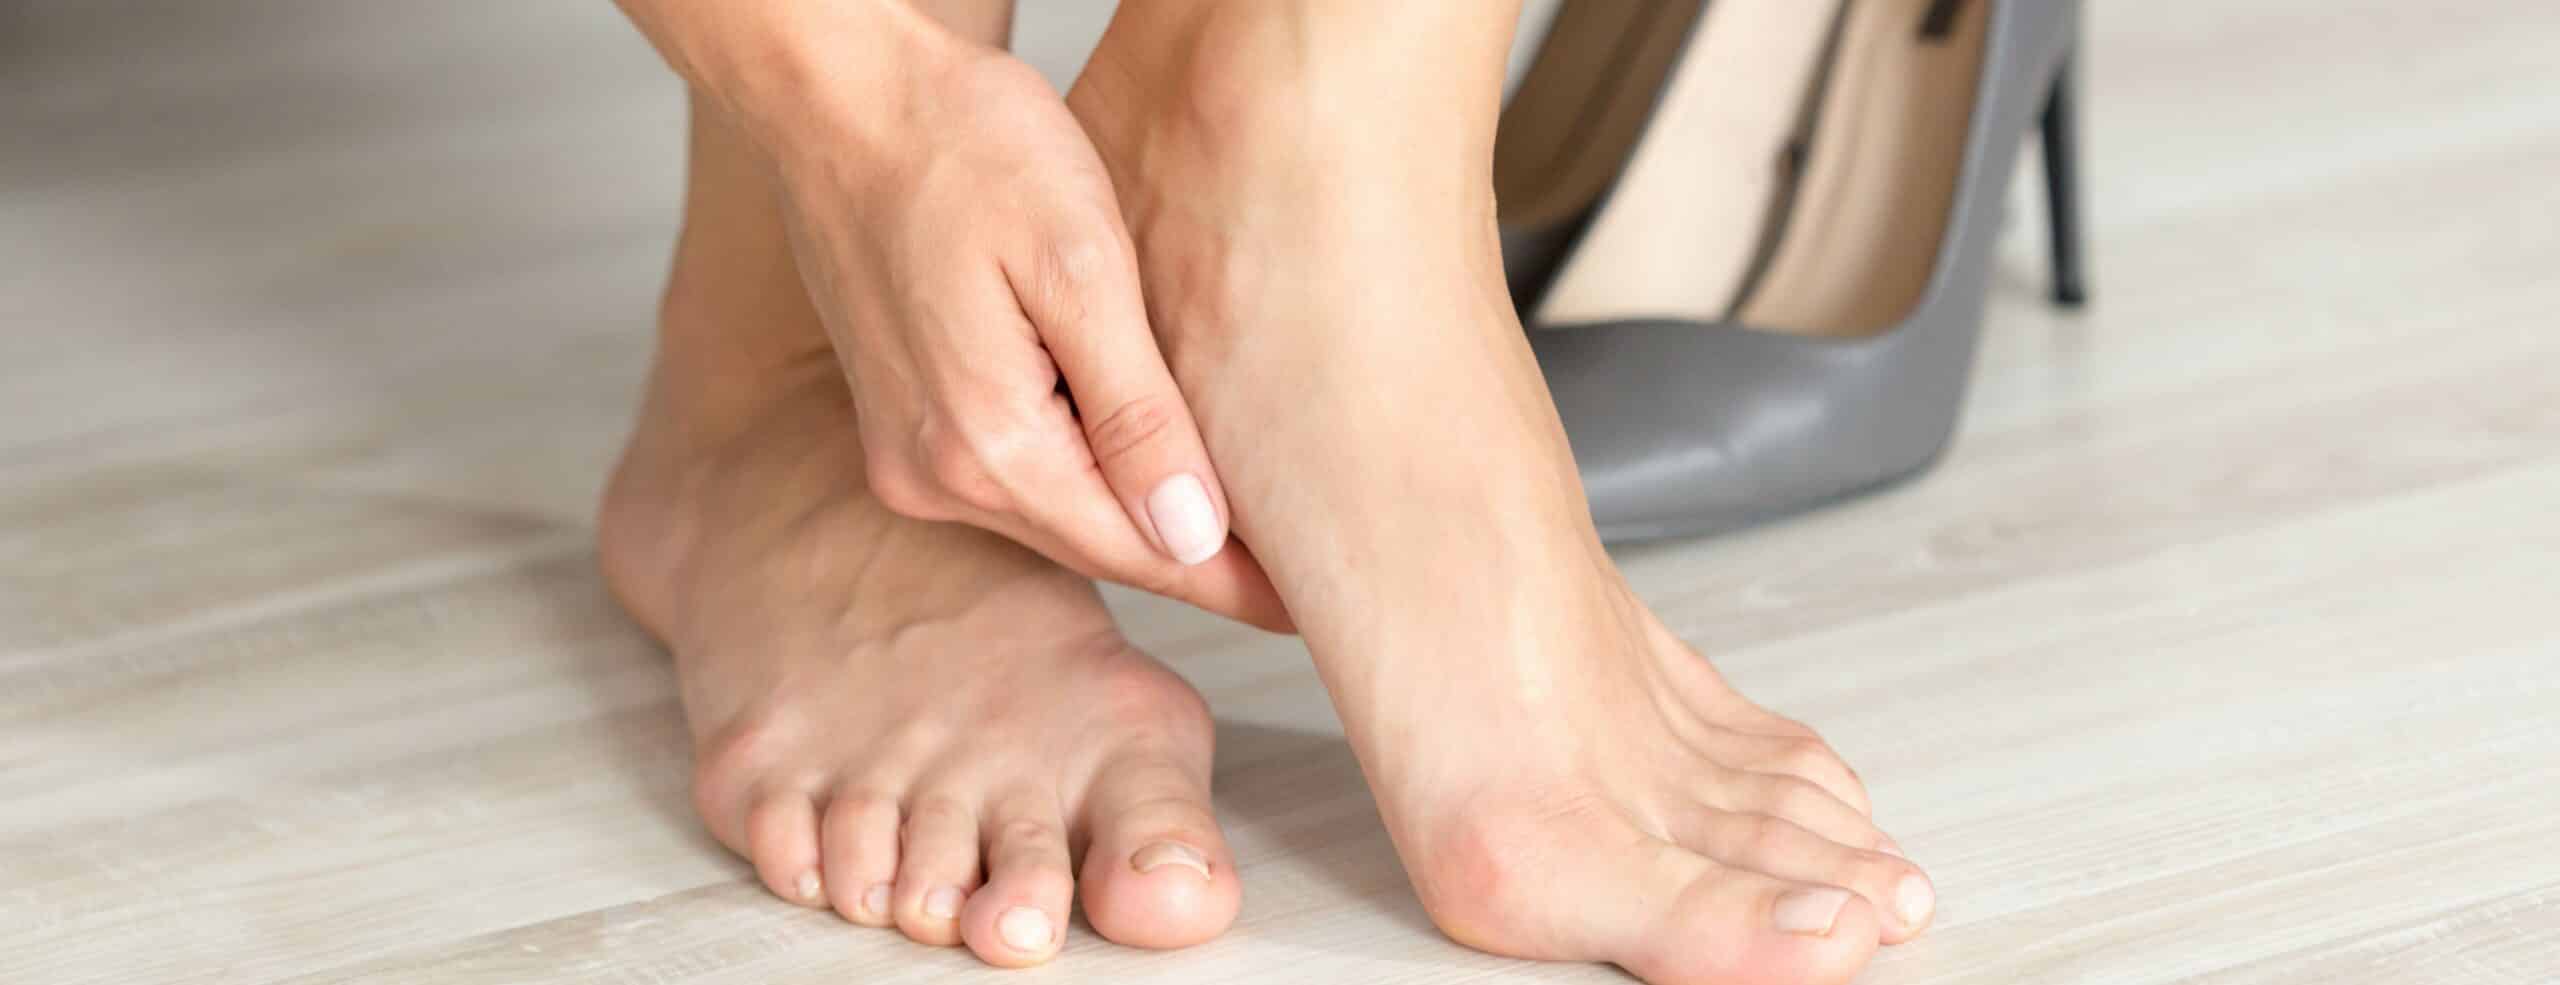 Comment vivre avec les pieds creux ? |Dr Polle | Normandie